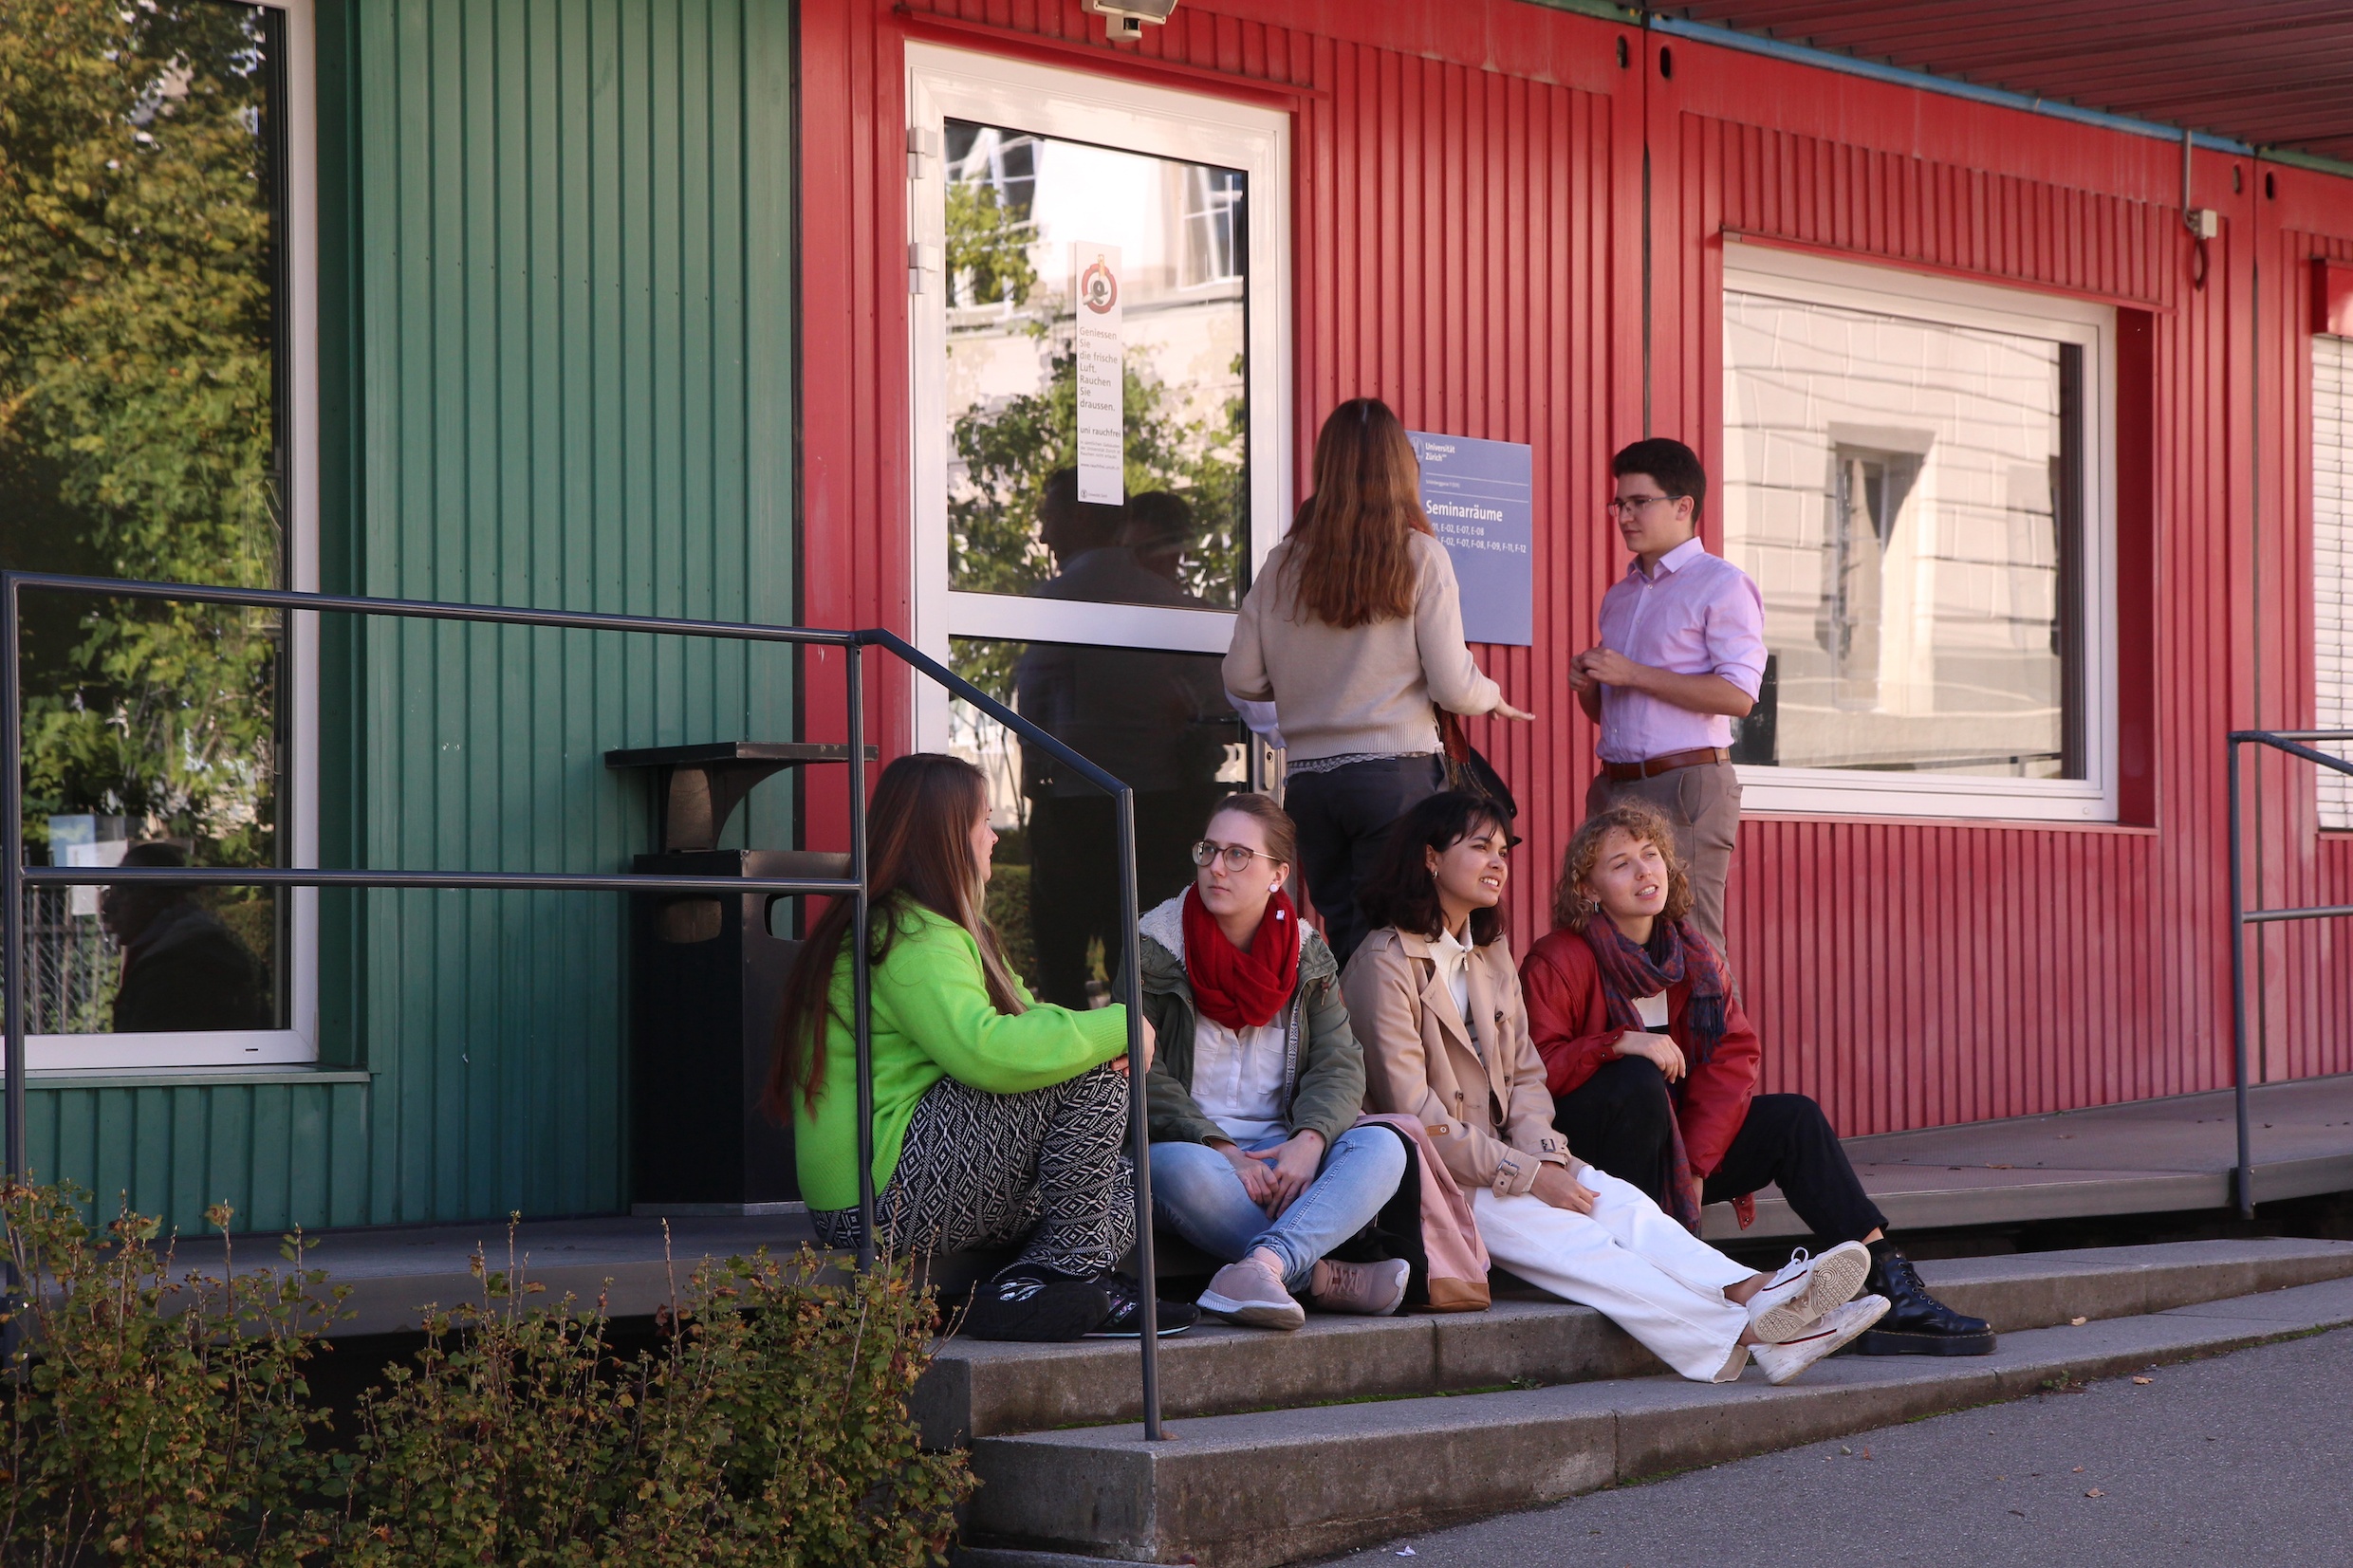 Das Bild zeigt eine Gruppe von Studierenden, die vor einem Gebäude der Universität in rot-grün sitzen und stehen, sie unterhalten sich.